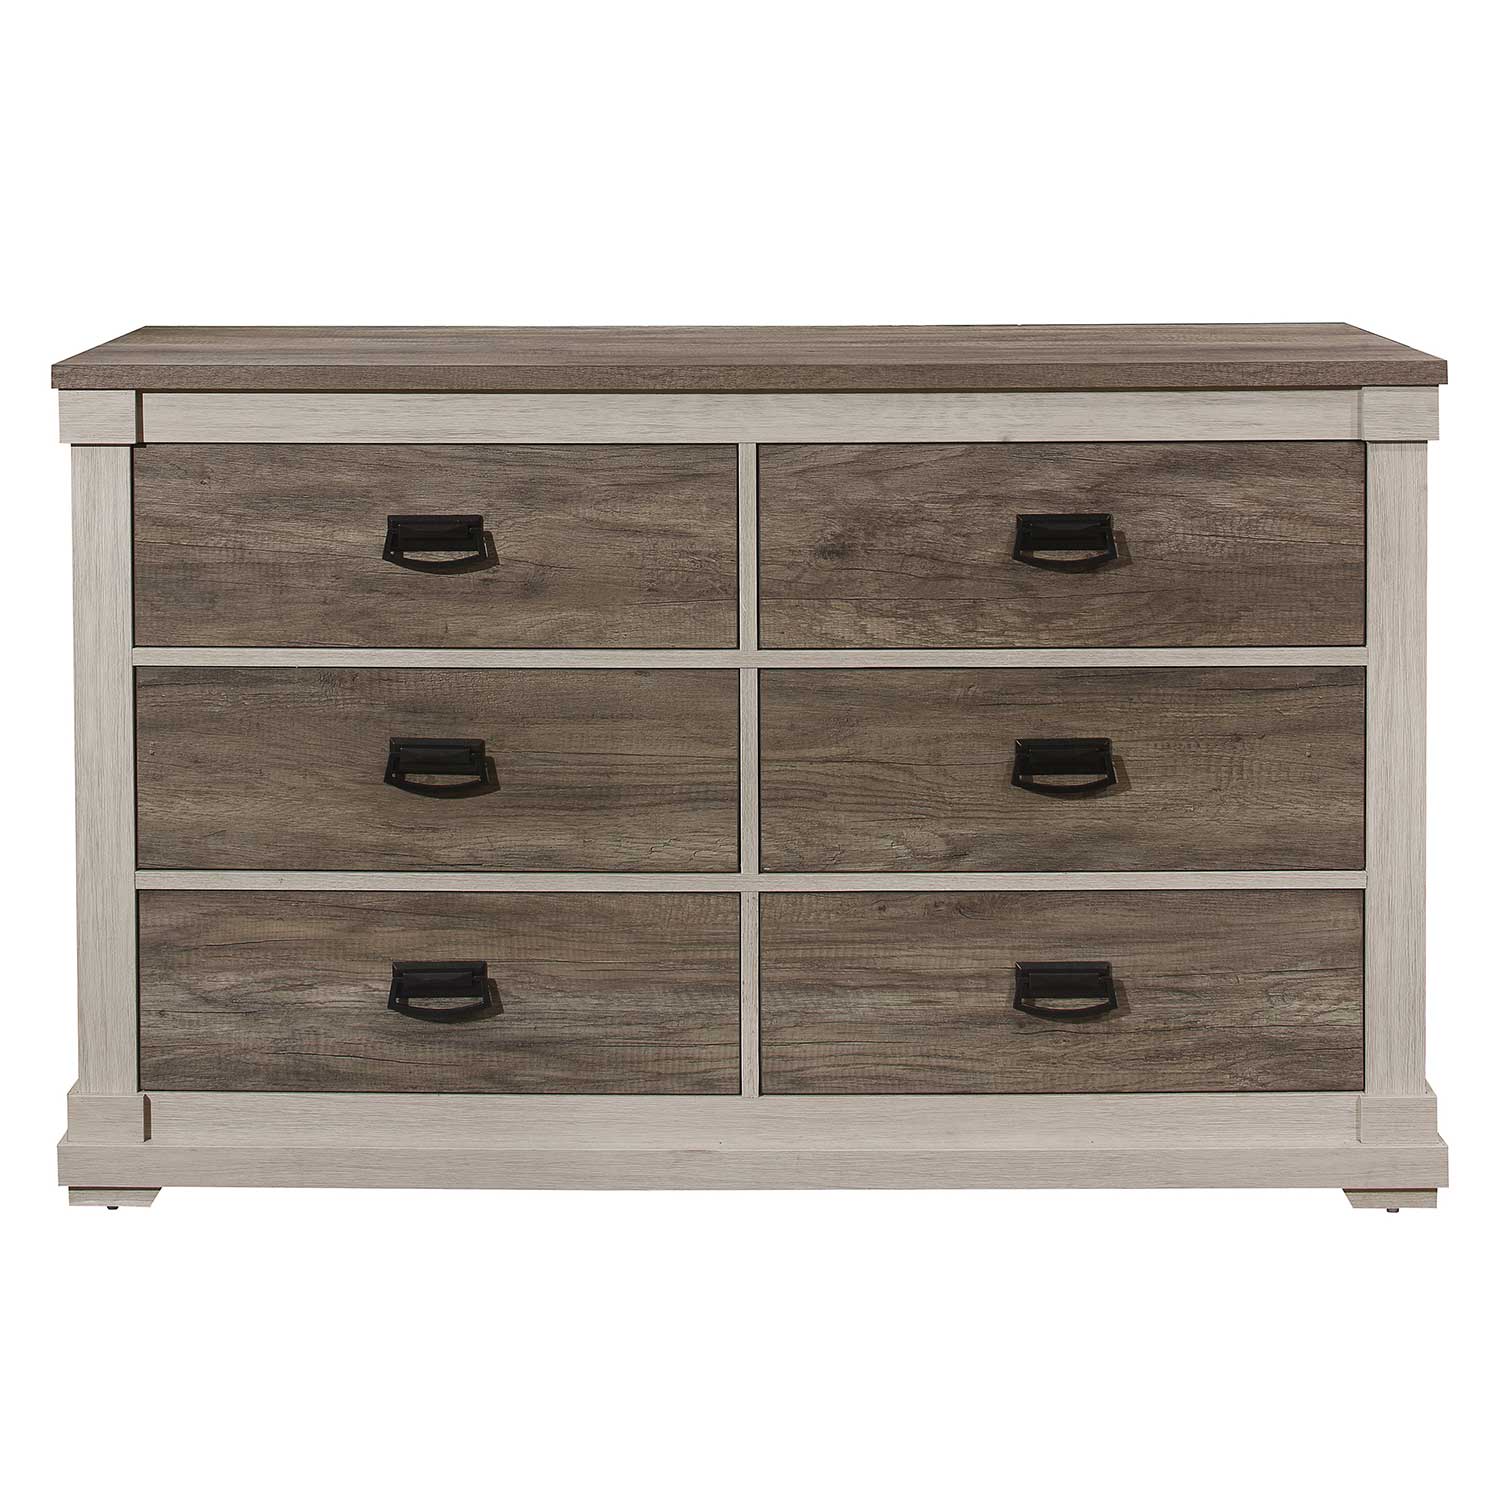 Homelegance Arcadia Dresser - White Framing and Variegated Gray Printed Faux-Wood Grain Veneer